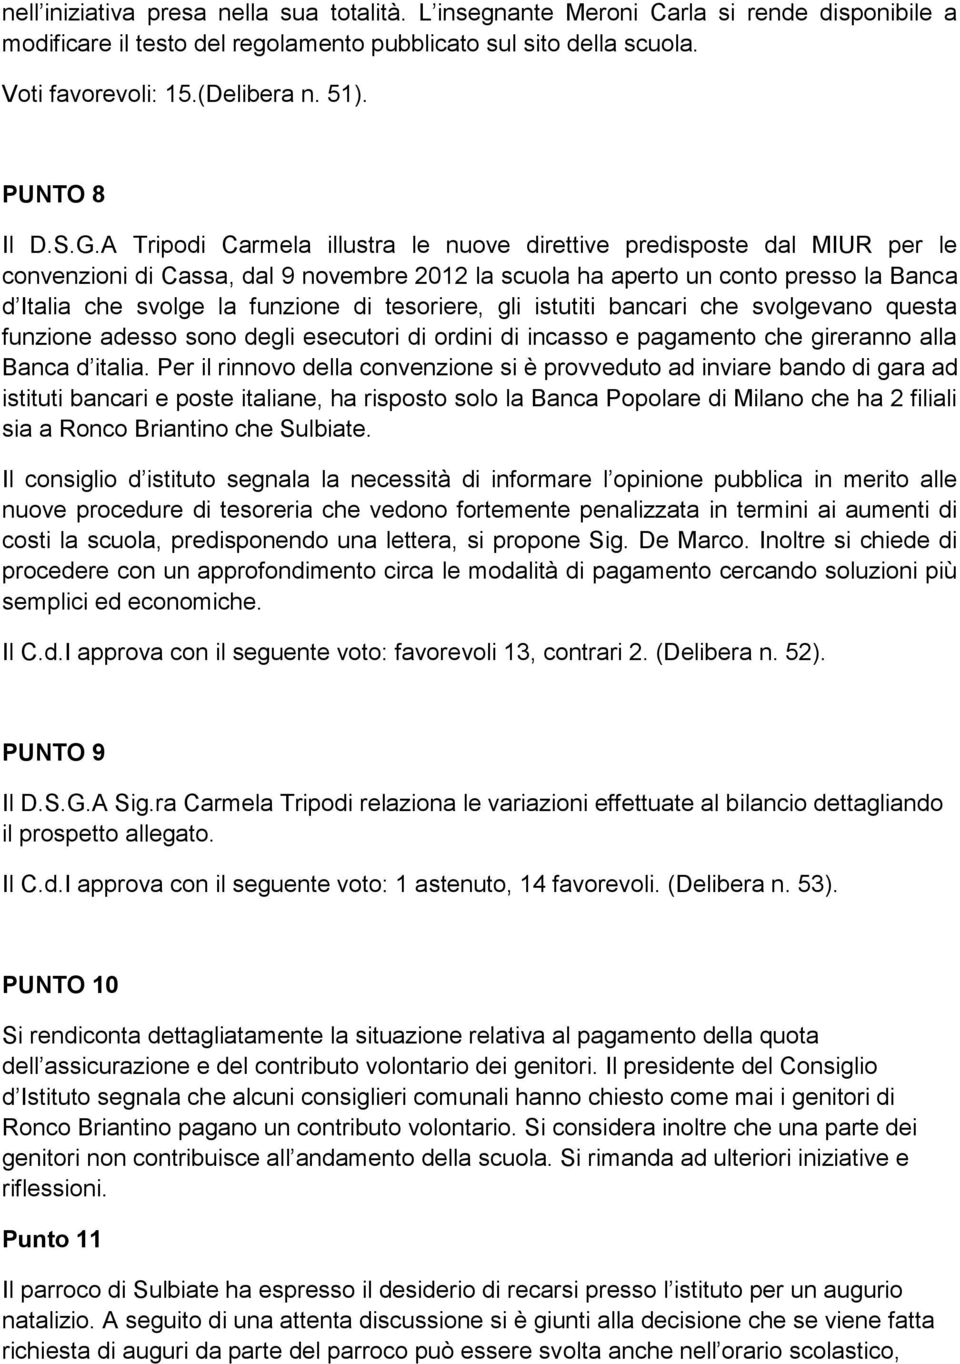 A Tripodi Carmela illustra le nuove direttive predisposte dal MIUR per le convenzioni di Cassa, dal 9 novembre 2012 la scuola ha aperto un conto presso la Banca d Italia che svolge la funzione di